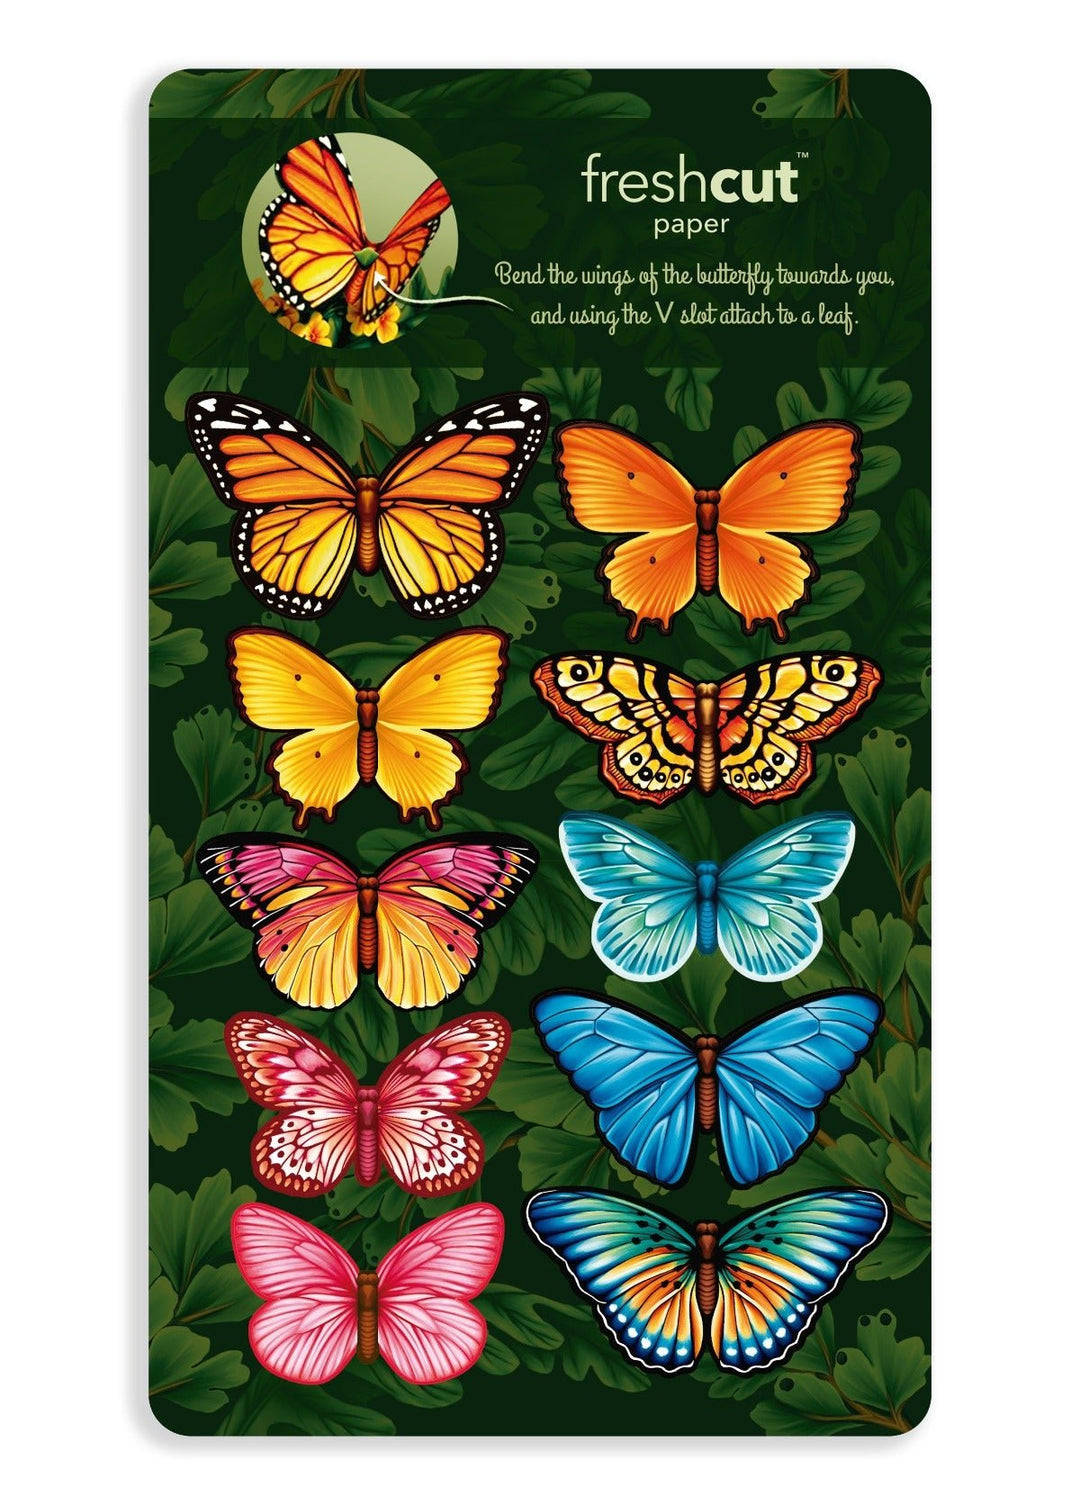 Butterflies and Buttercups - FreshCut Paper